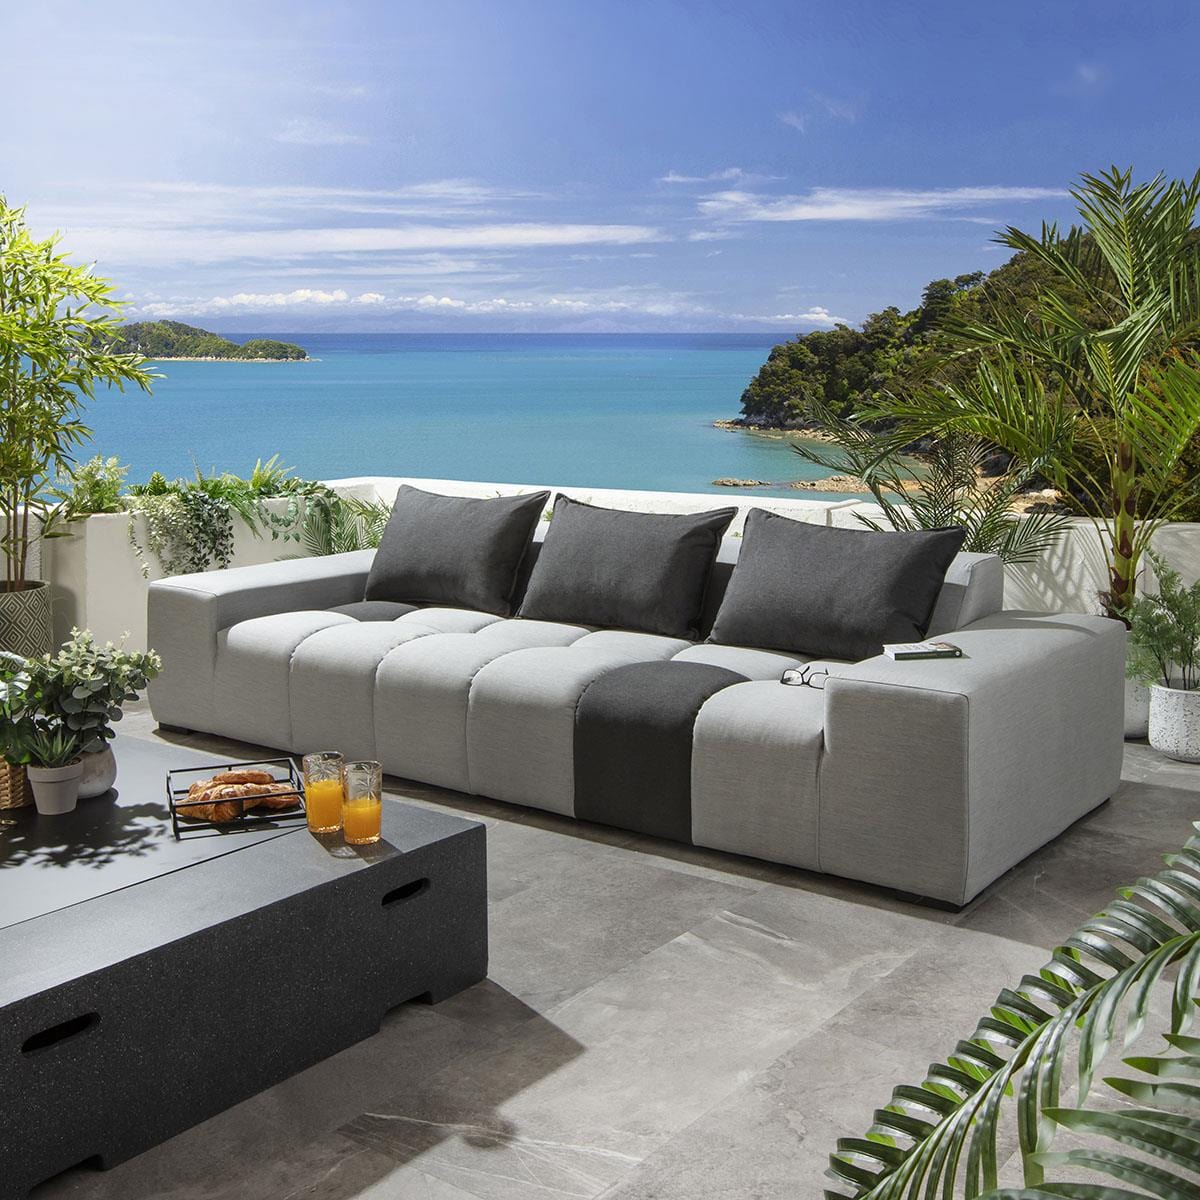 Quatropi Blow Premium 3 Seater Garden Sofa Lead Grey 281cm